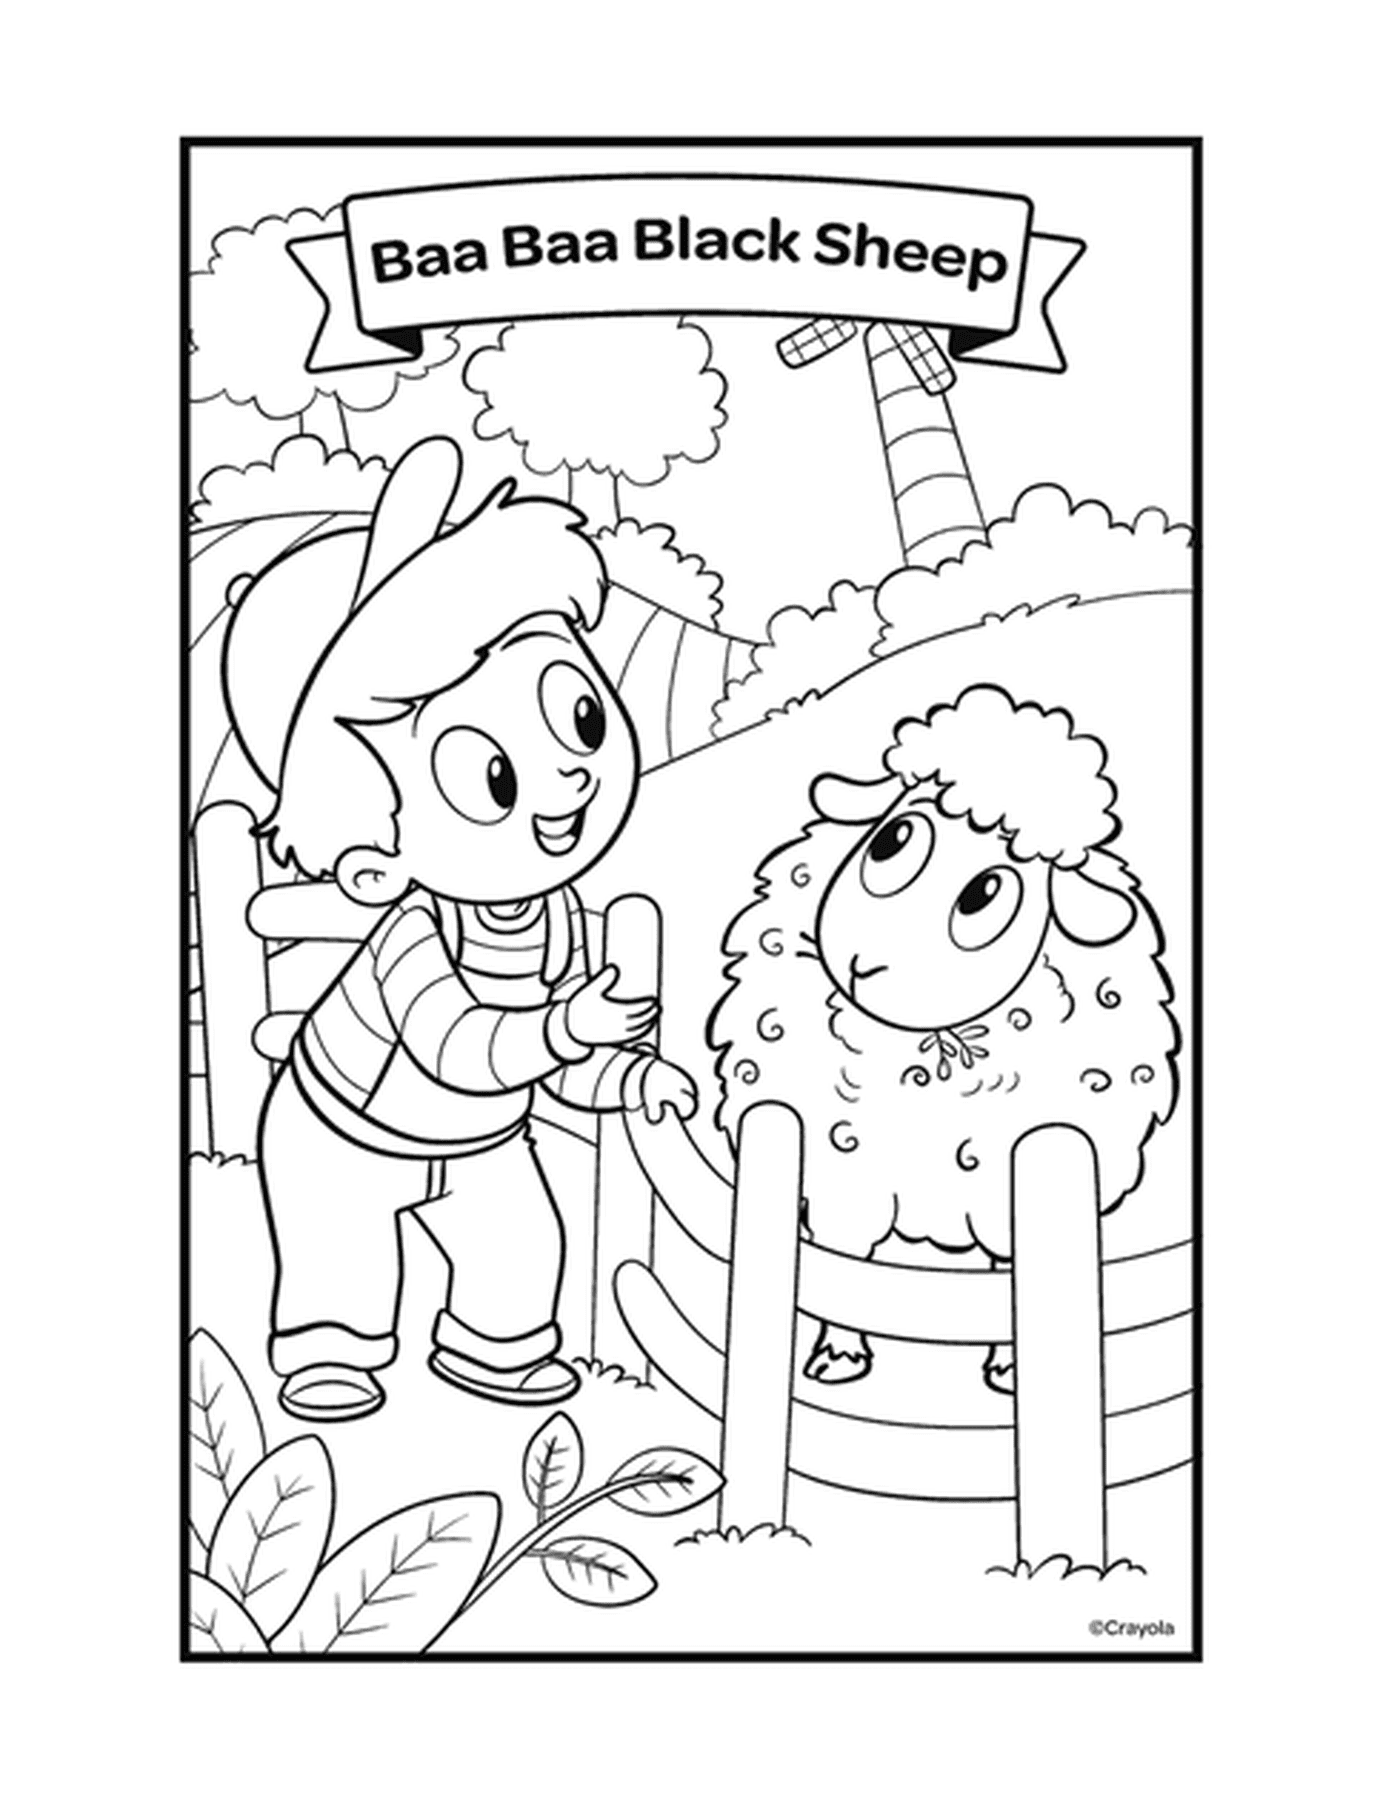  A figura Baa Baa Black Sheep com um menino acariciando uma ovelha em uma caneta 